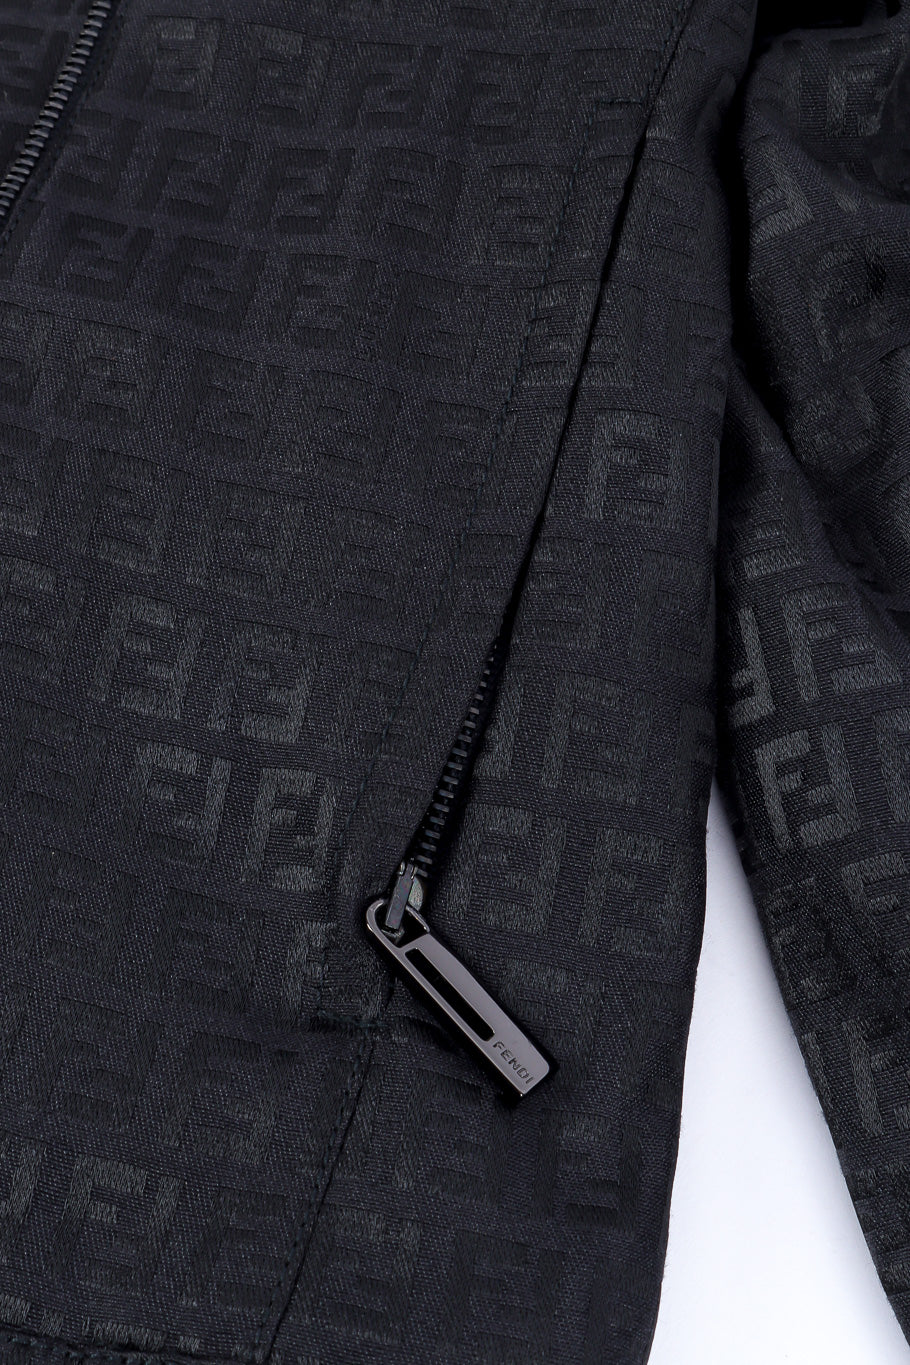 Fendi zucca monogram jacket zipper detail @recessla